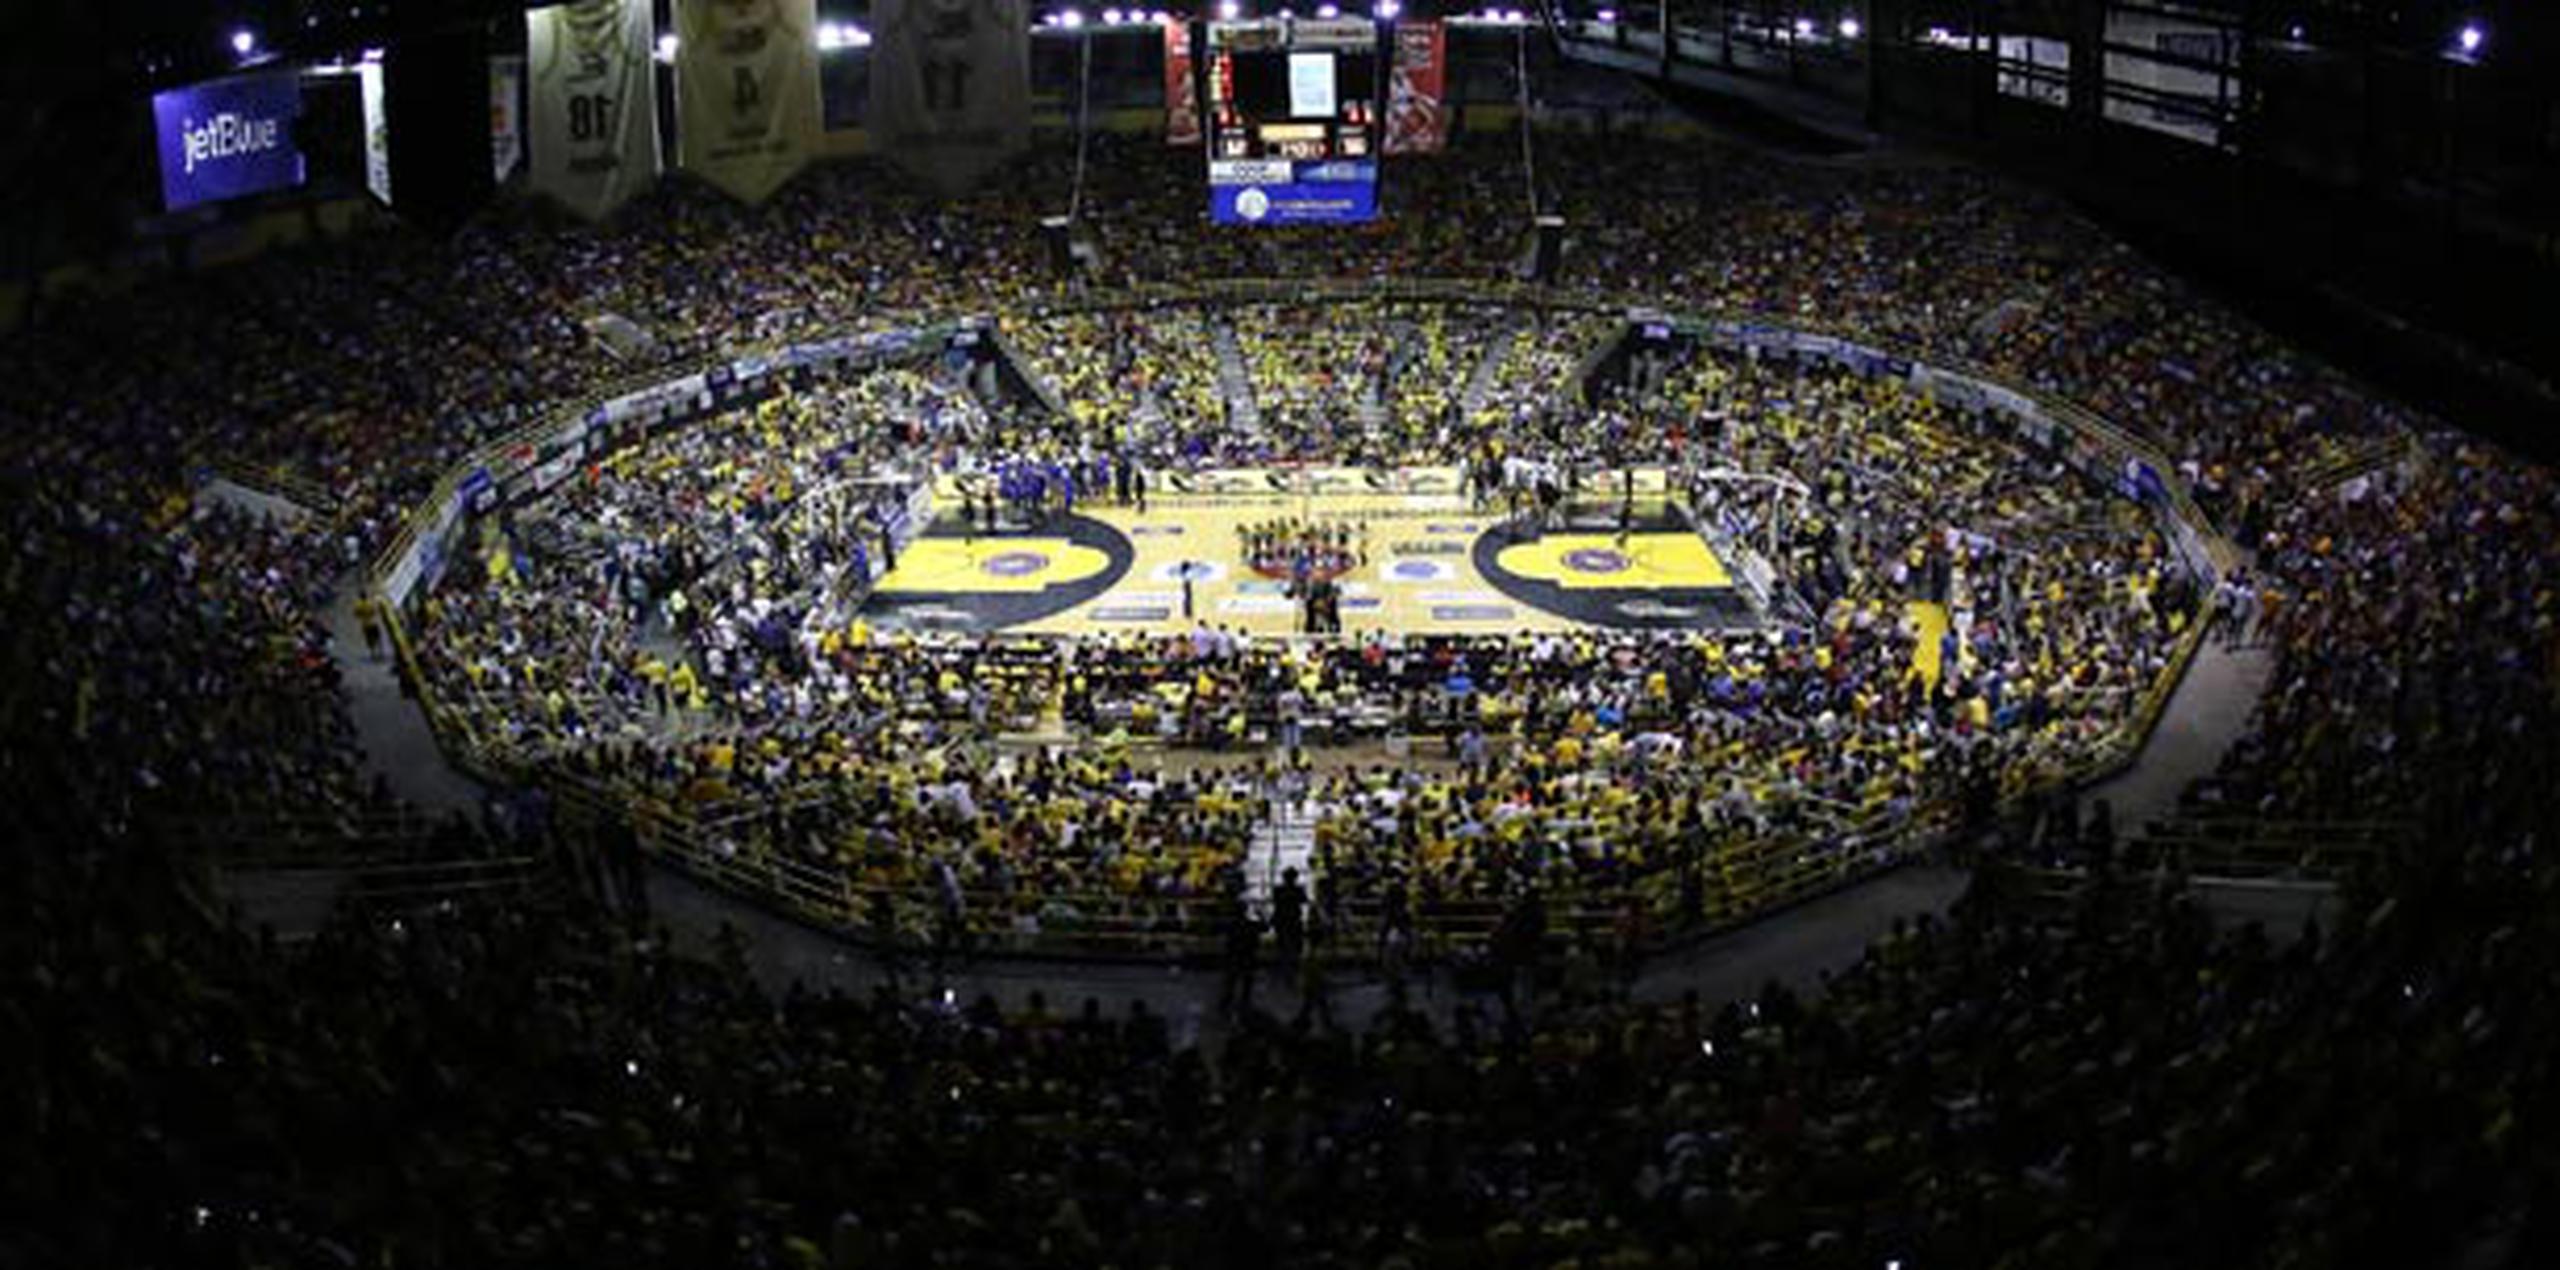 En el Coliseo había unos 12,000 fanáticos de baloncesto viendo el juego. (Para Primera Hora / Xavier García)